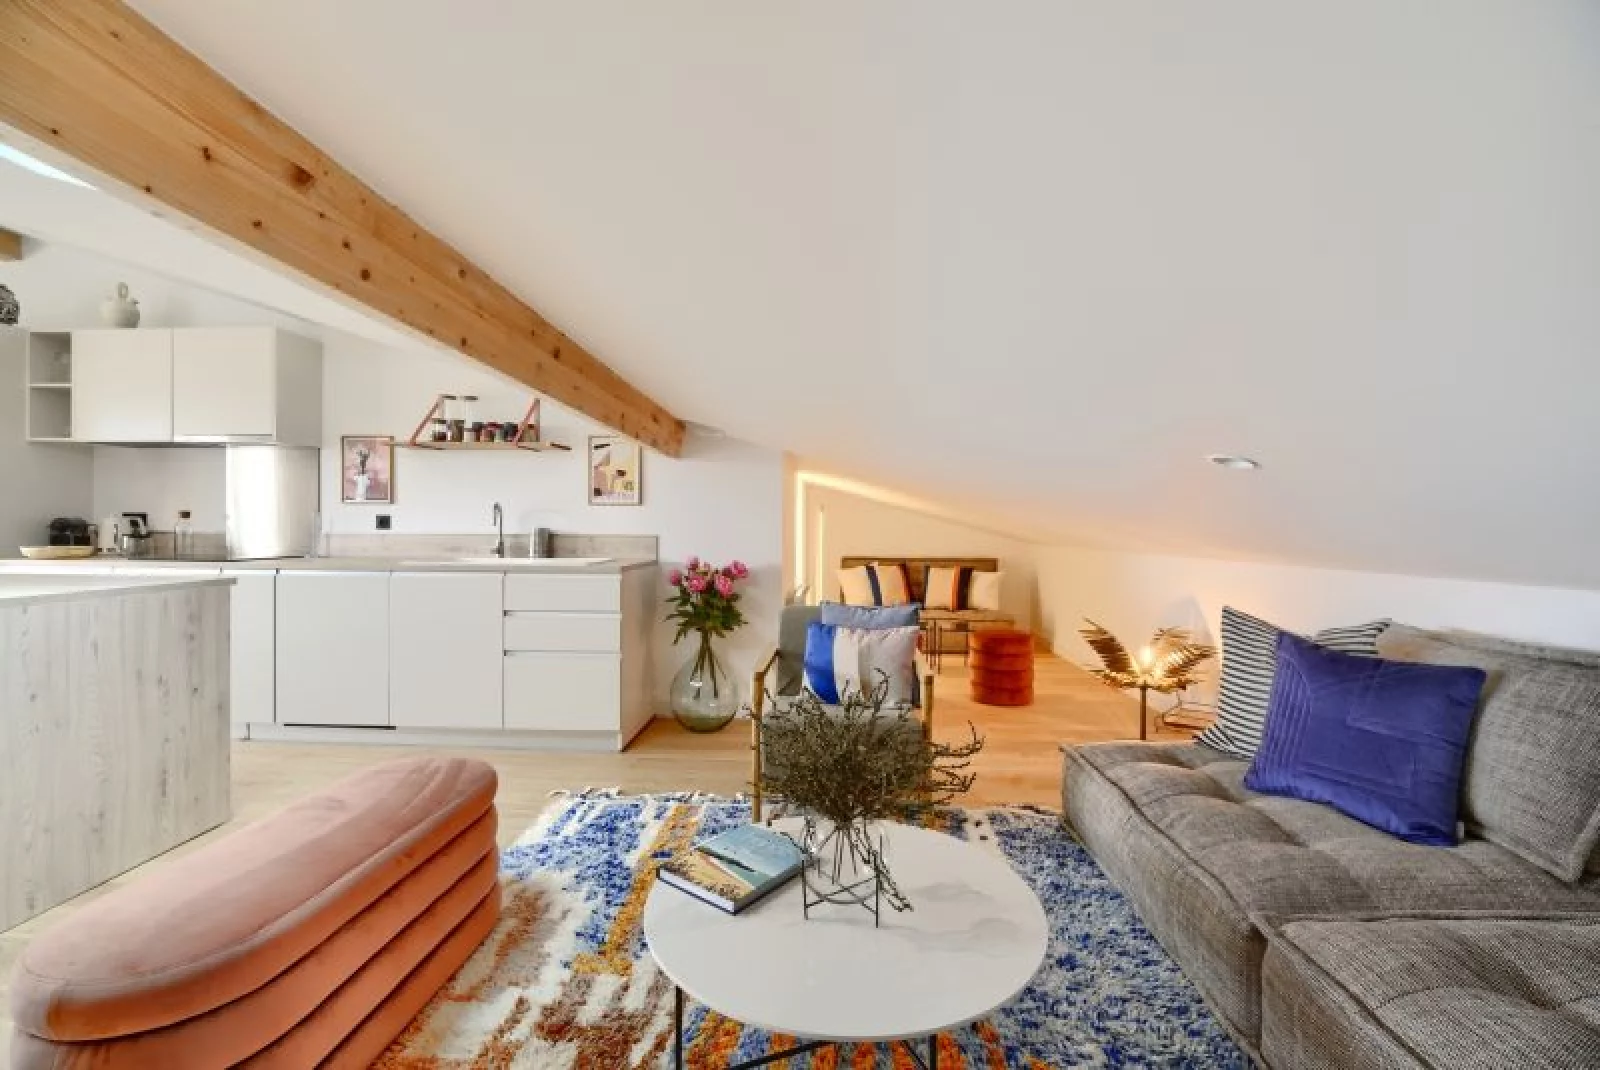 Location appartement duplex meublé 4 pièces de 83m² (Bordeaux - Chartrons)